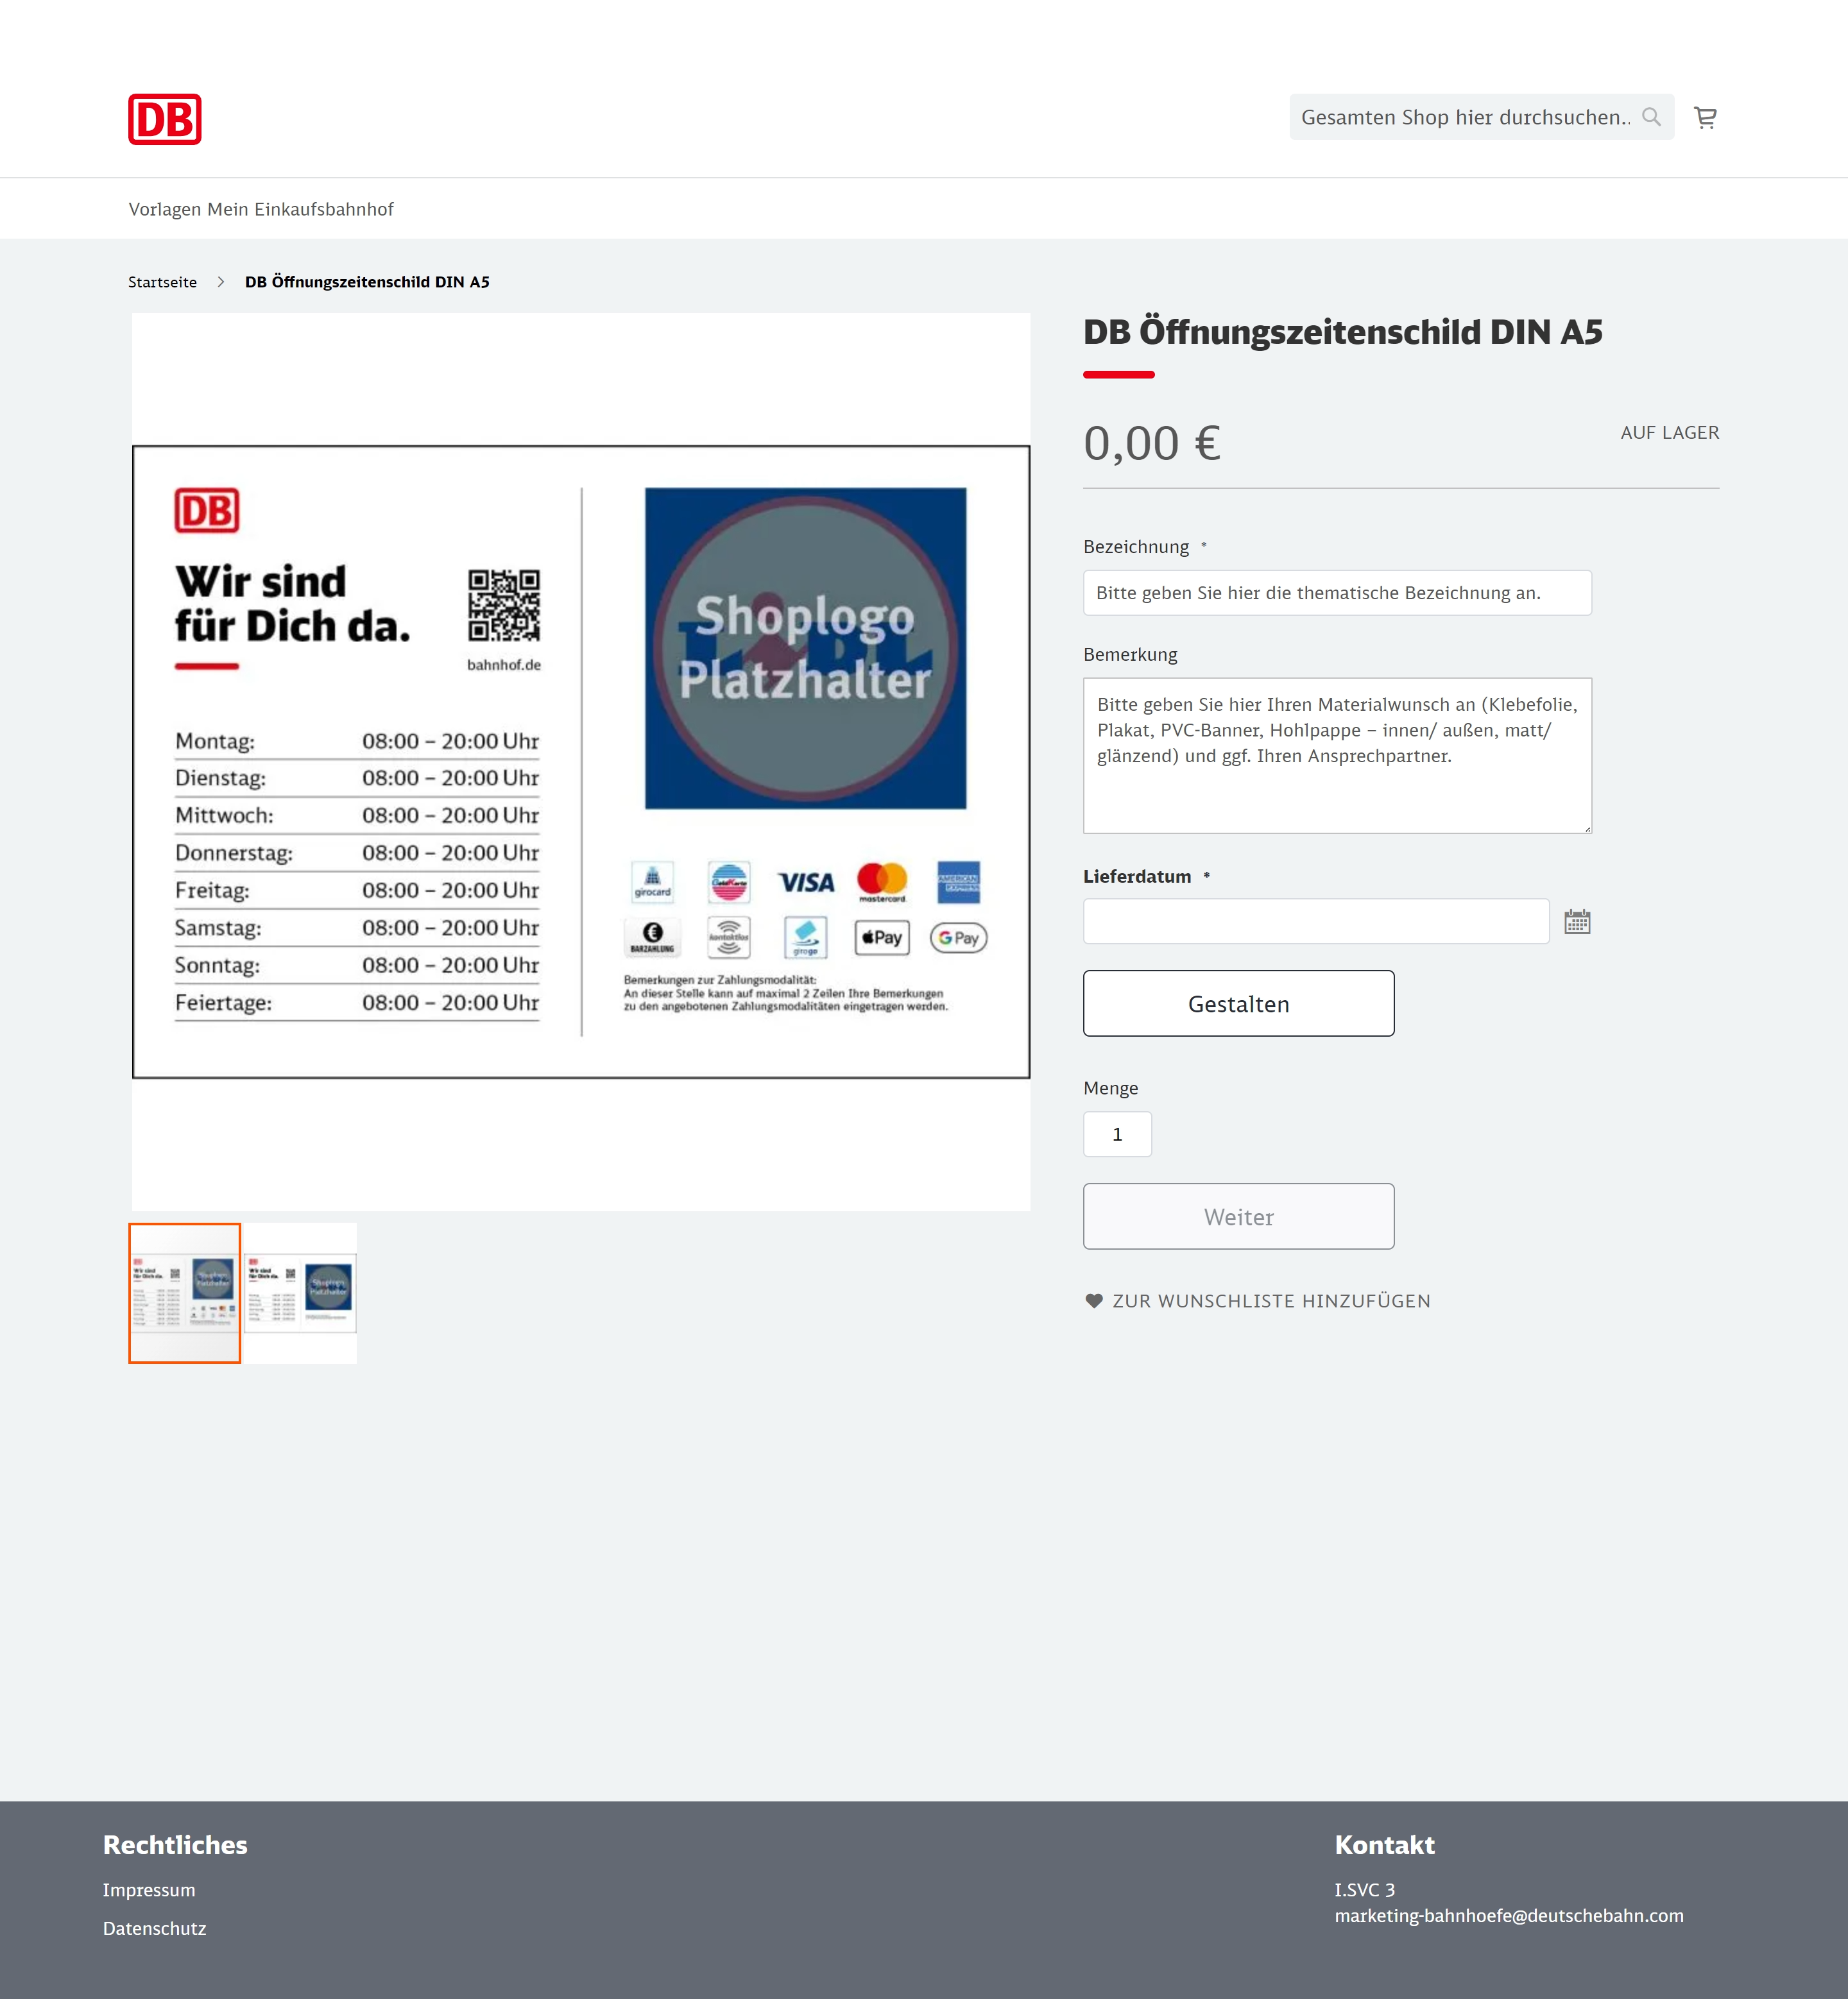 Screenshot der Produktdetailseite in "Mein Einkaufsbahnhof"